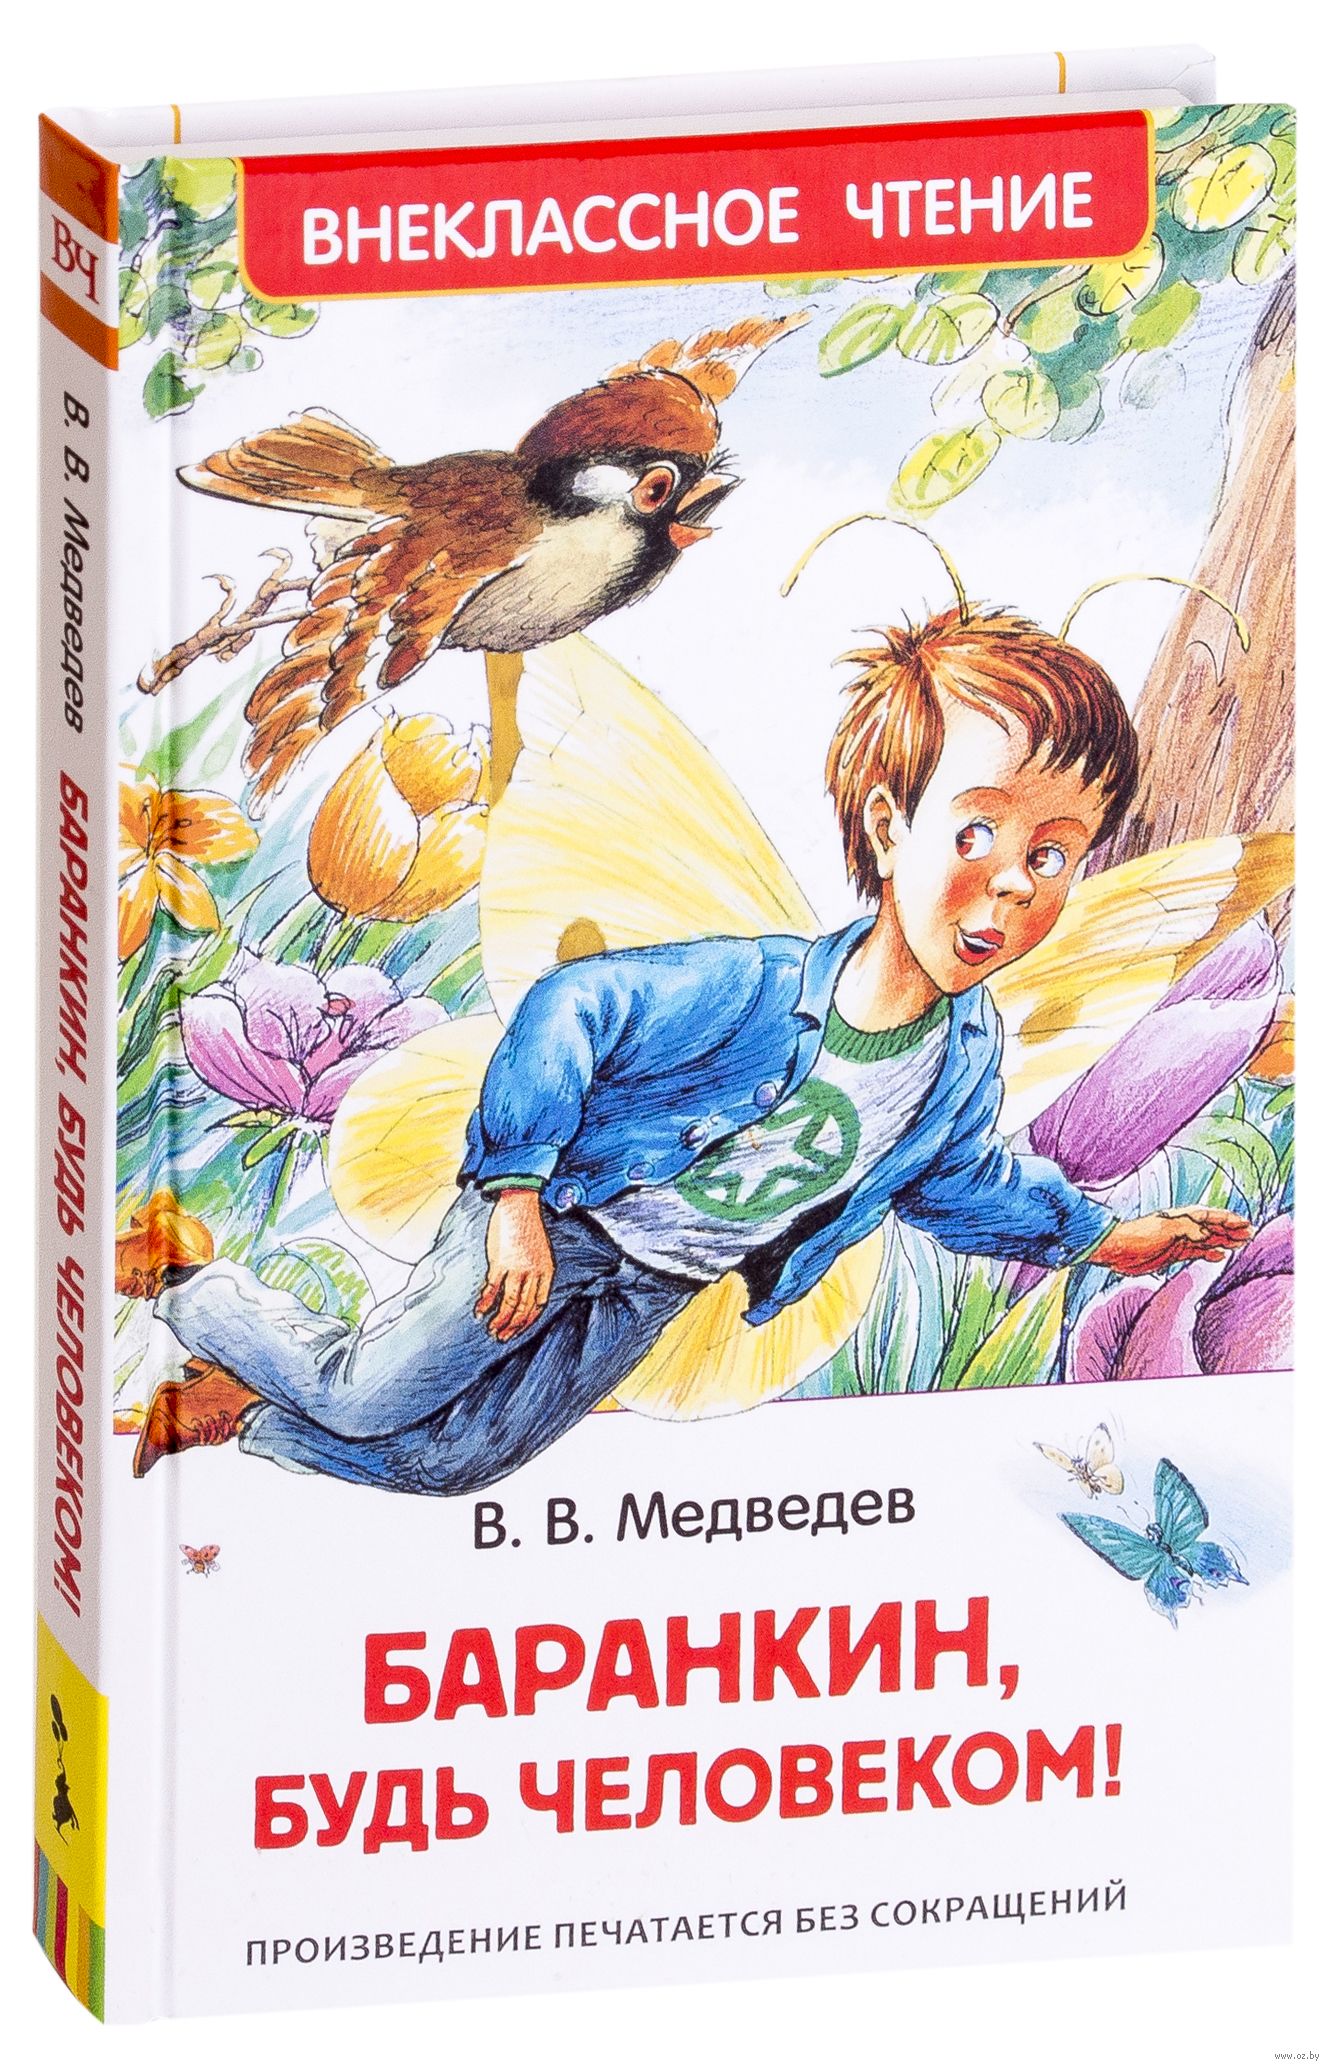 Слушать чтение произведений. Медведев Баранкин будь человеком книга. Баранкин будь человеком Внеклассное чтение книга. Медведев Баранкин будь человеком иллюстрации.